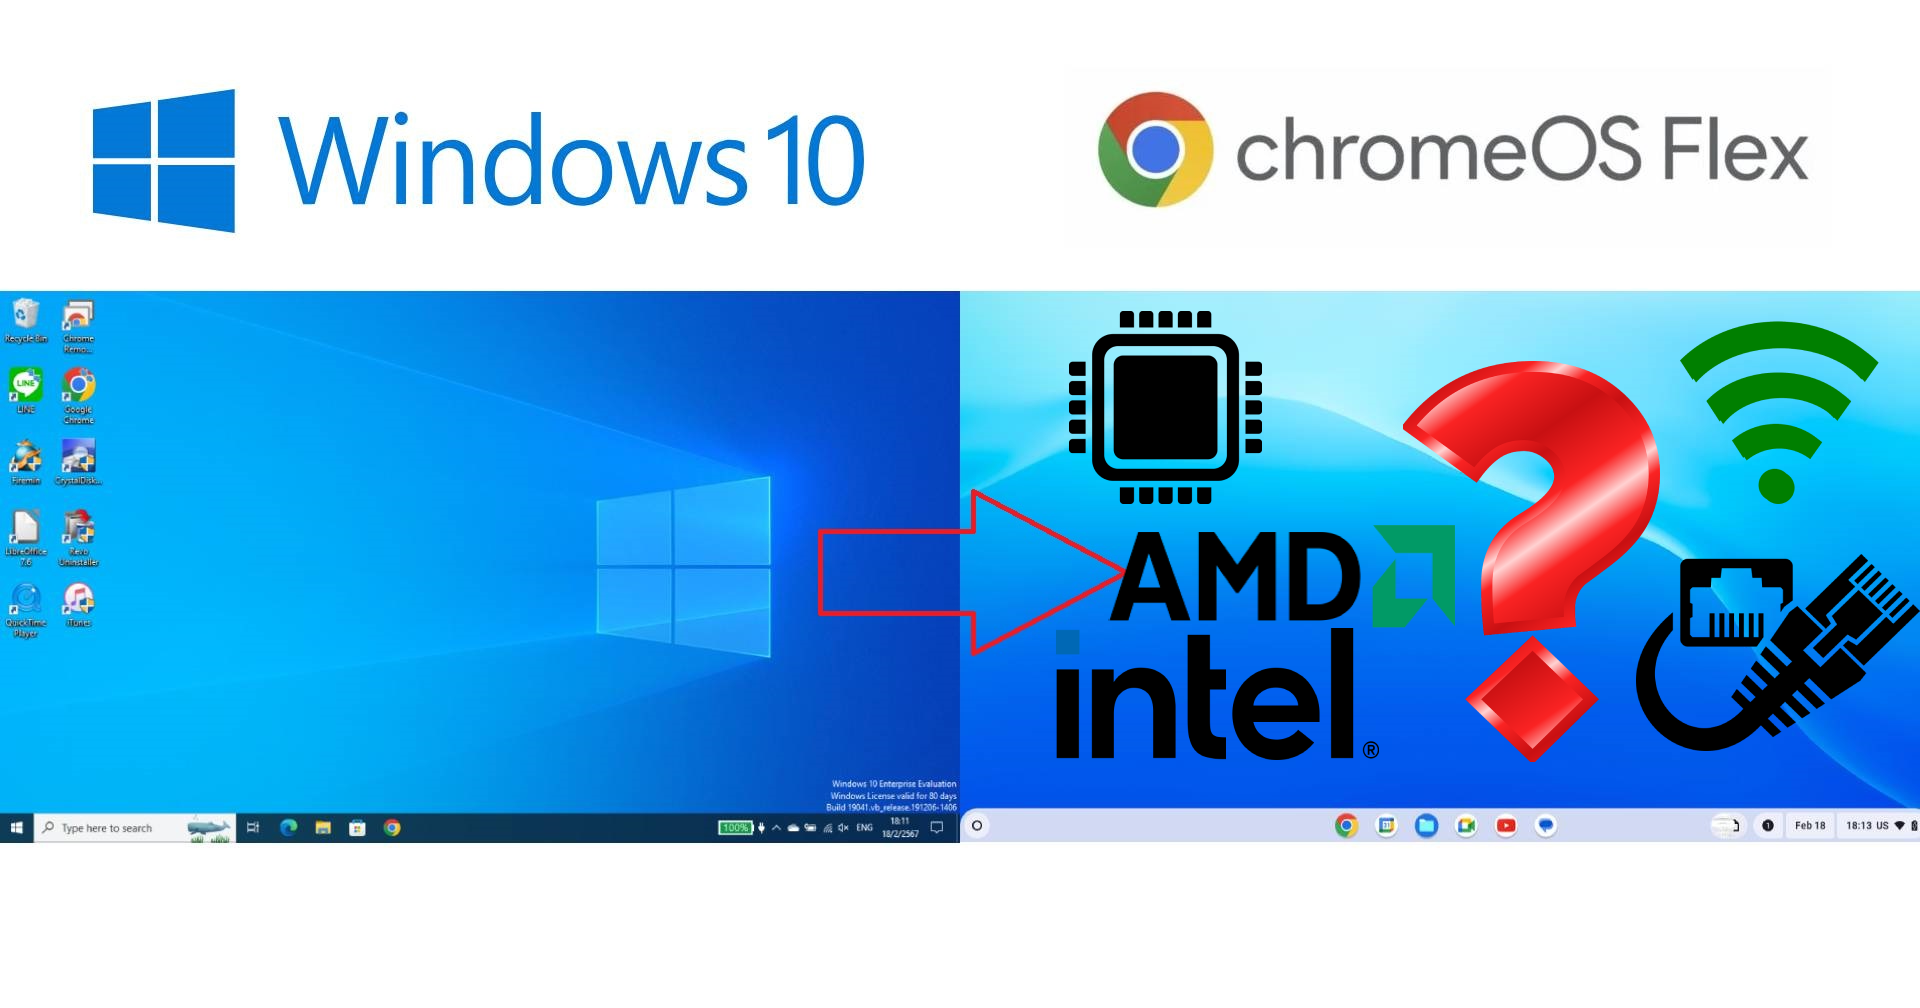 11 เหตุผลที่ Google เสนอใช้ ChromeOS Flex แทน Windows 10 – ตกลงใช้ในองค์กรฟรีจริงหรือไม่ รองรับเครื่องเก่าได้แค่ไหน?